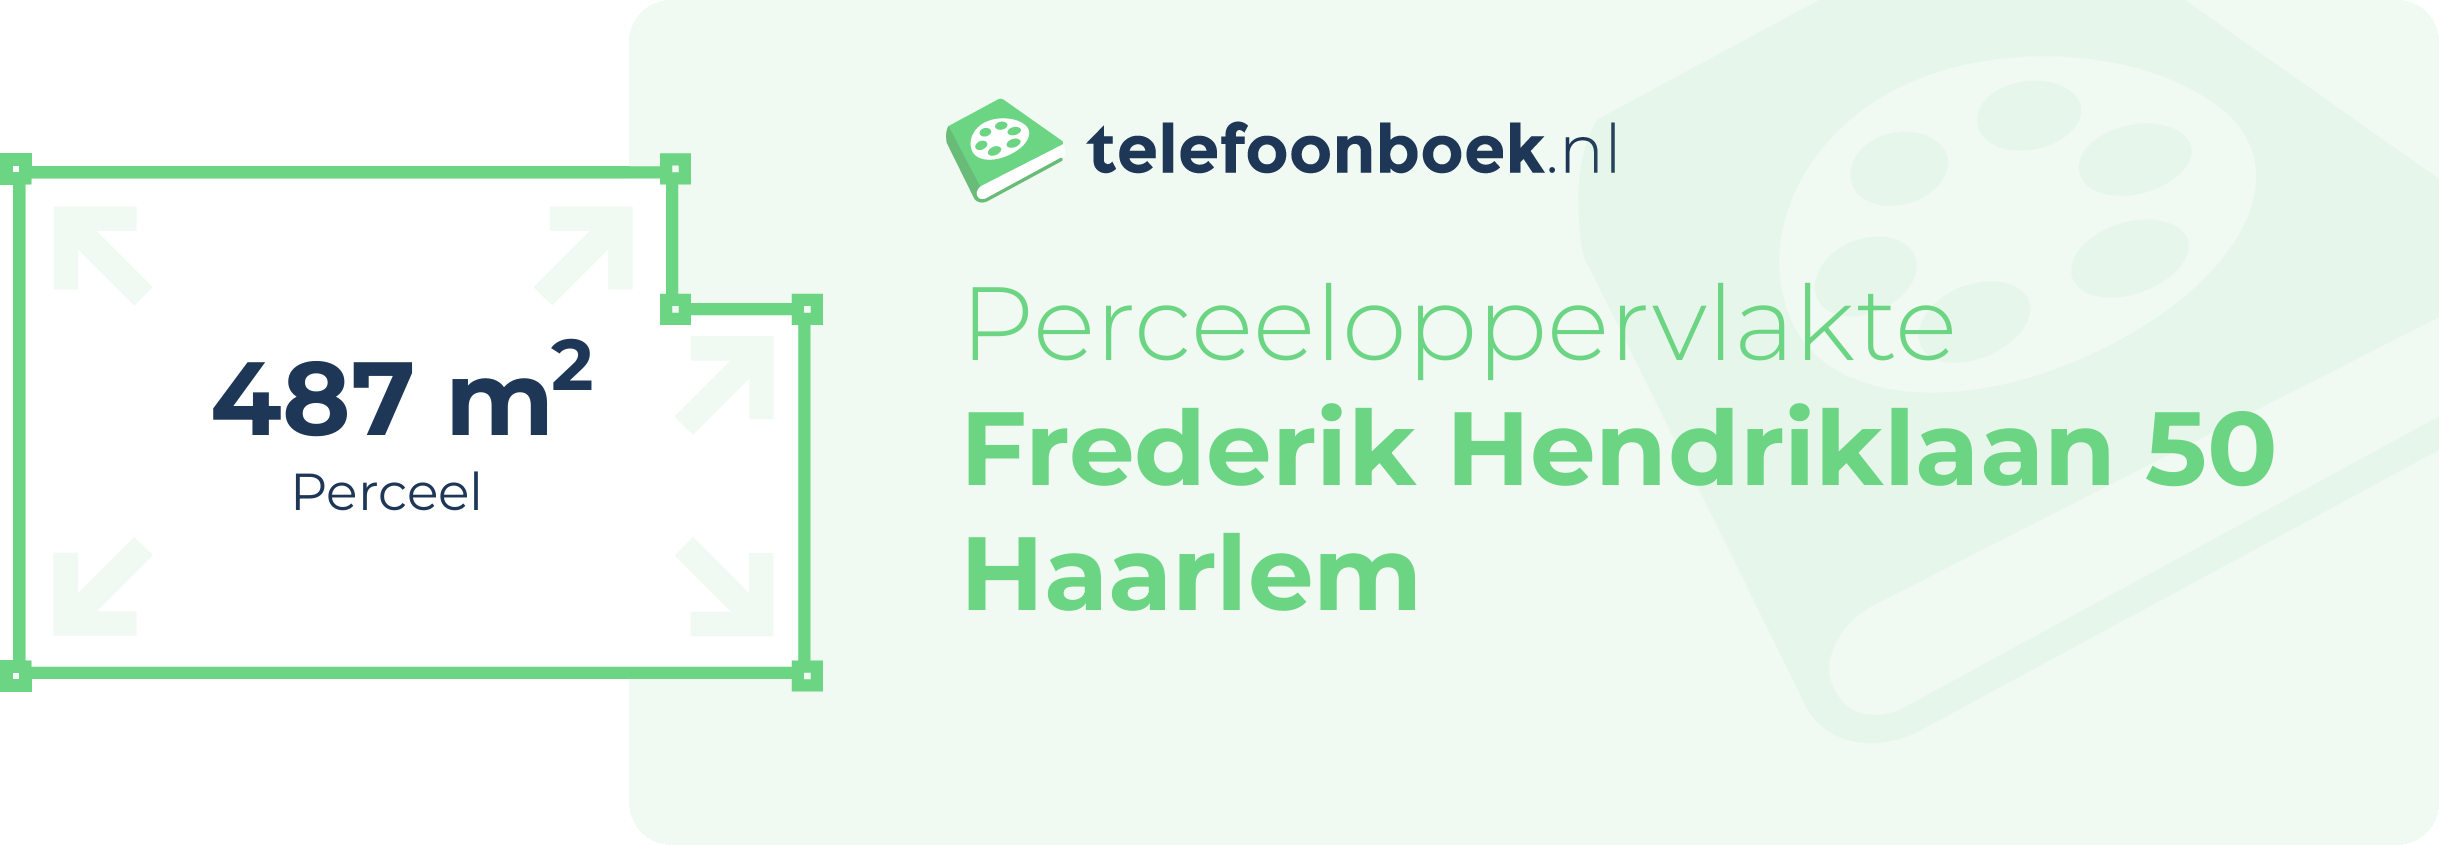 Perceeloppervlakte Frederik Hendriklaan 50 Haarlem